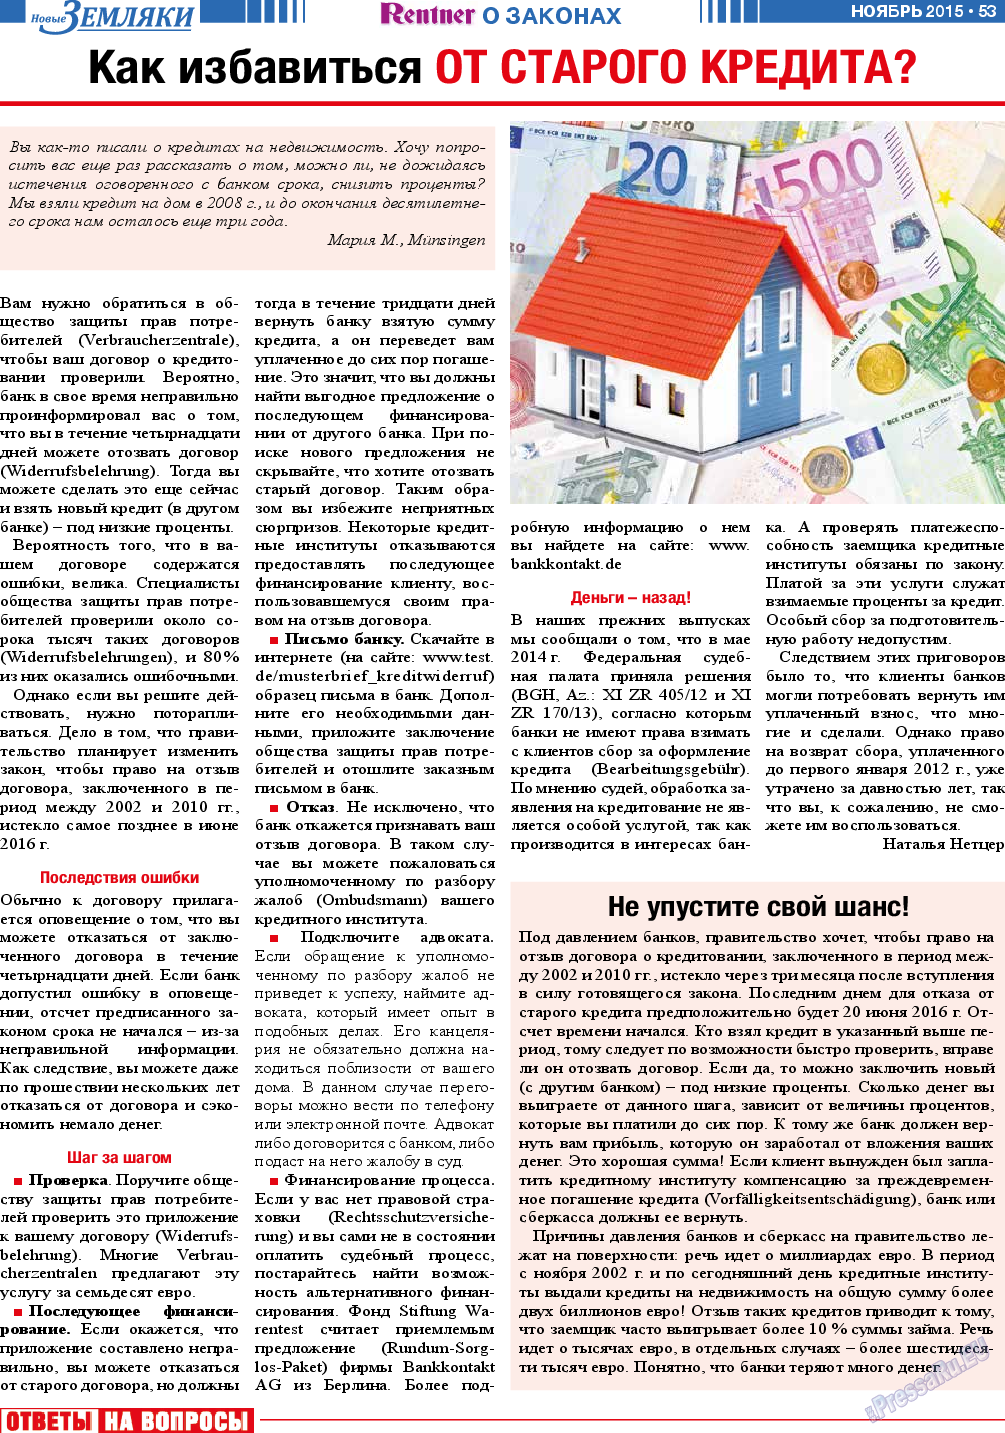 Новые Земляки, газета. 2015 №11 стр.53